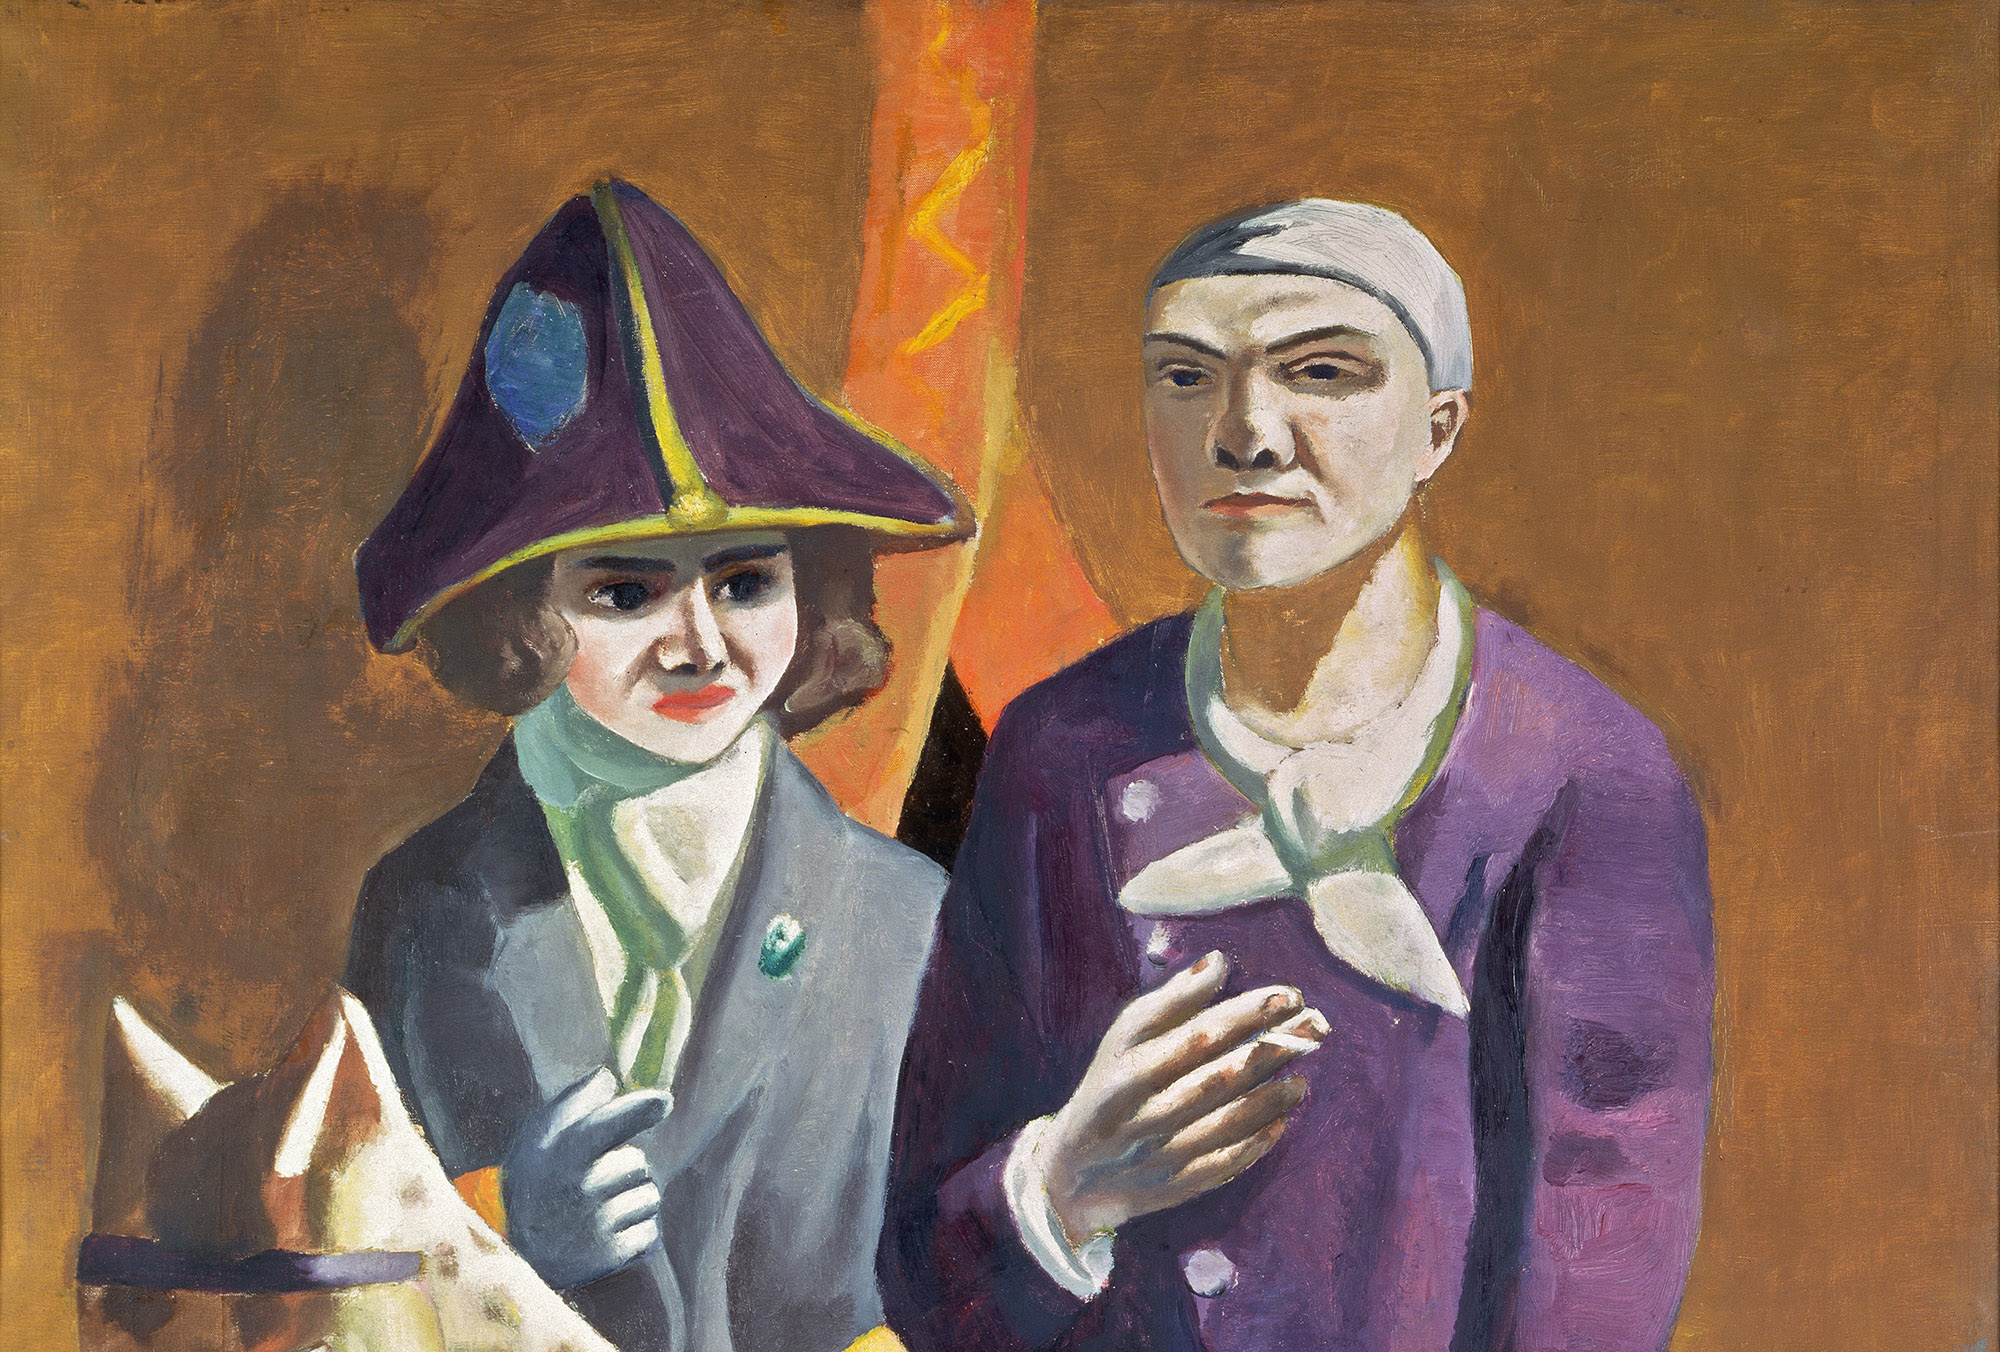 Detall del ‘Carnaval’, pintura de Max Beckmann de 1925, també titulada ‘Doble retrat’ de l’artista i l’esposa Quappi